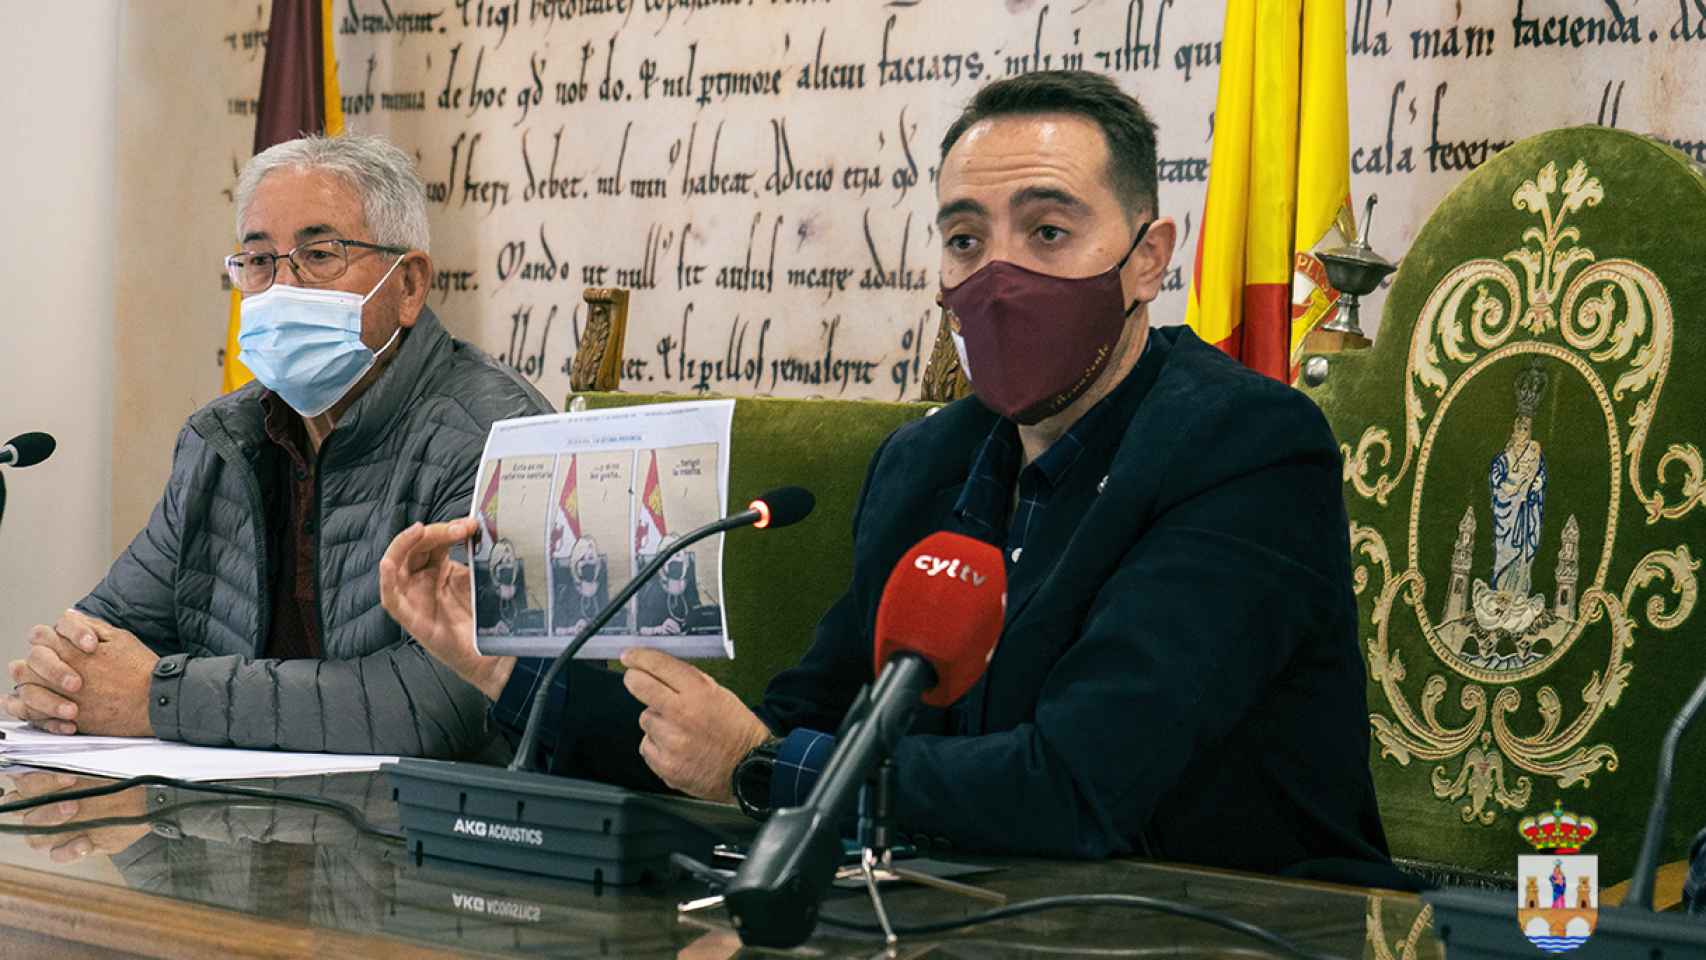 Luciano Huerga acusa a la Junta de querer privatizar la sanidad de Castilla y León